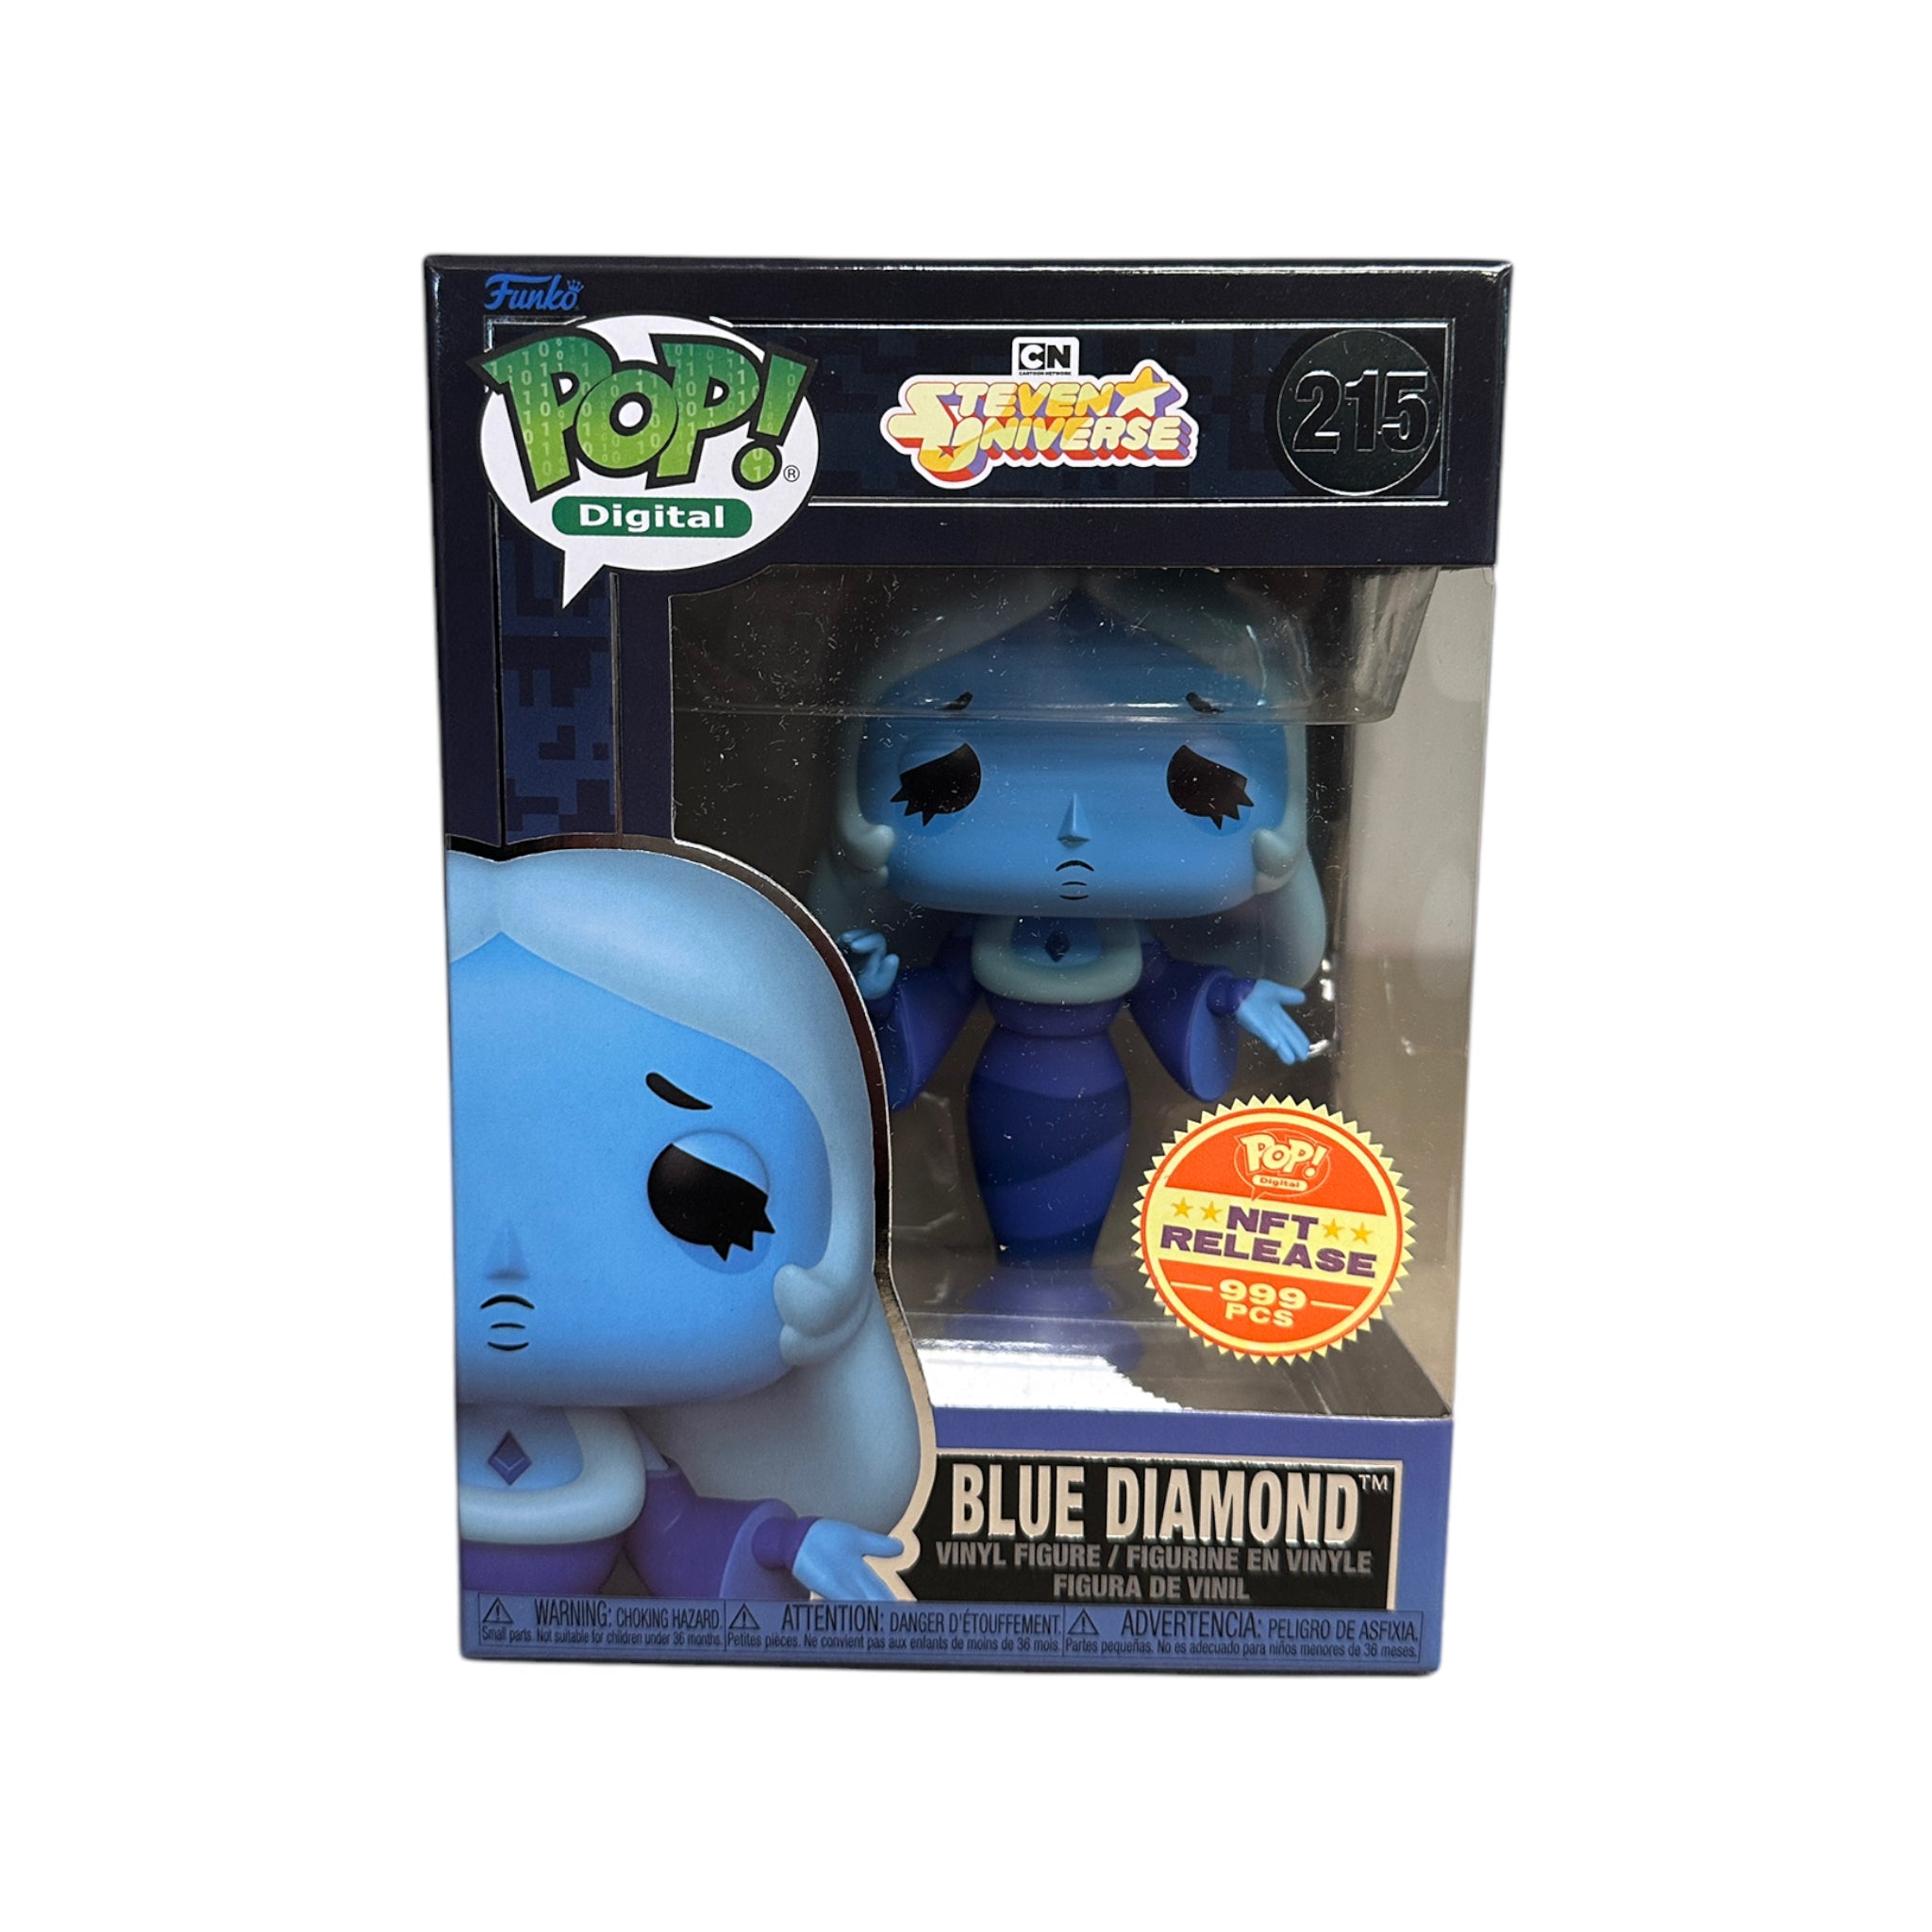 Blue Diamond #215 Funko Pop! - Steven Universe - NFT Release Exclusive LE999 Pcs - Condition 9/10